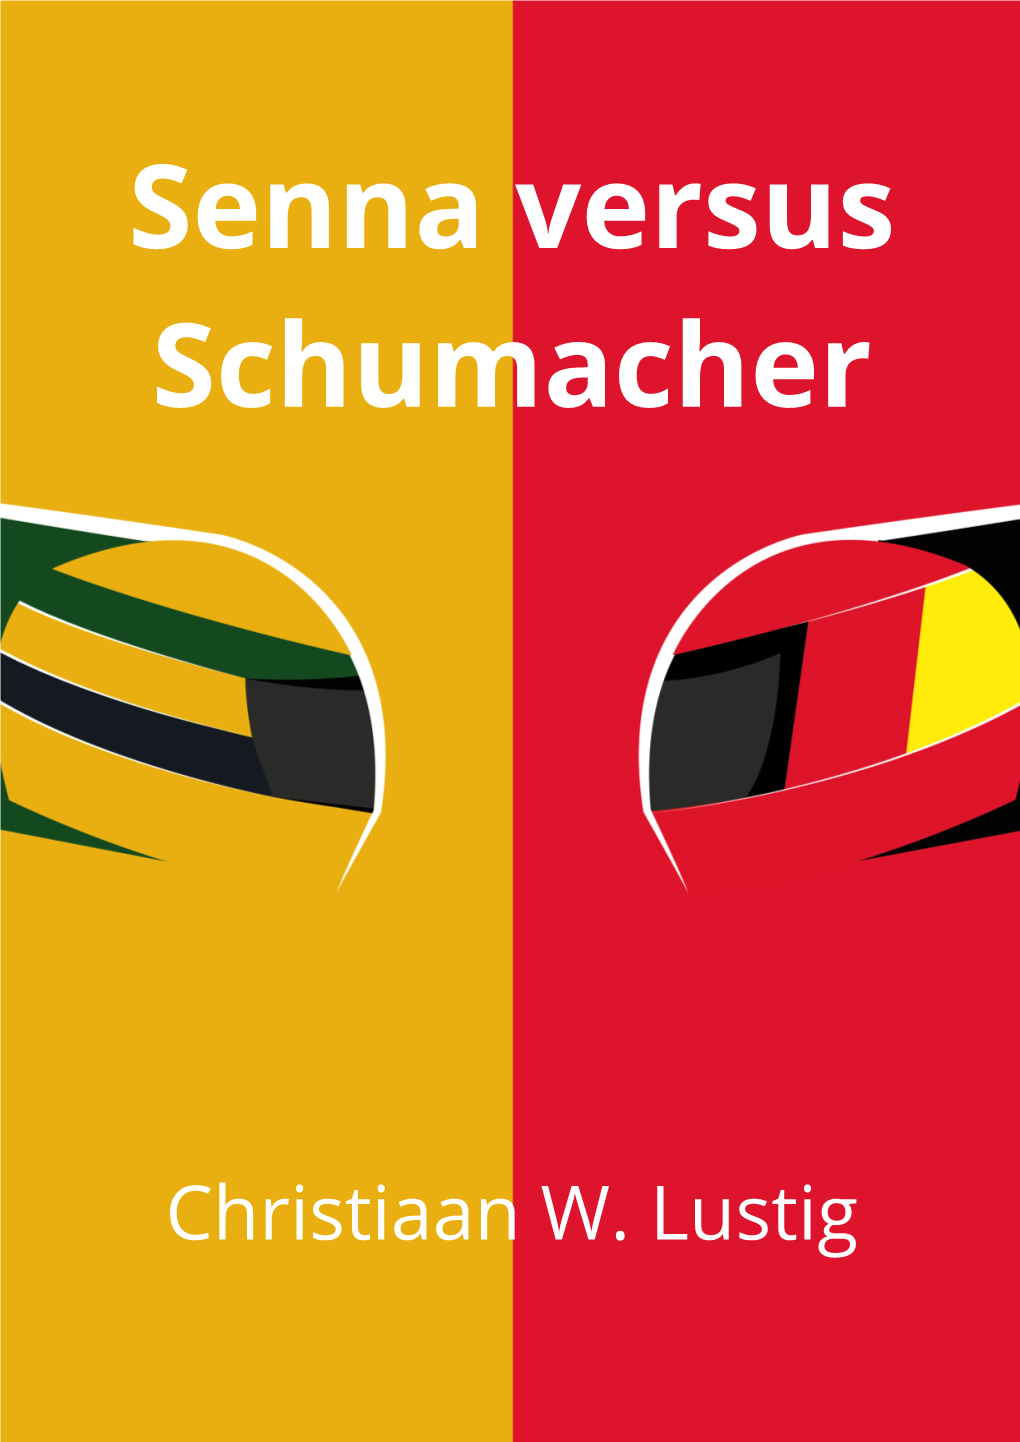 Senna Versus Schumacher [1.1]